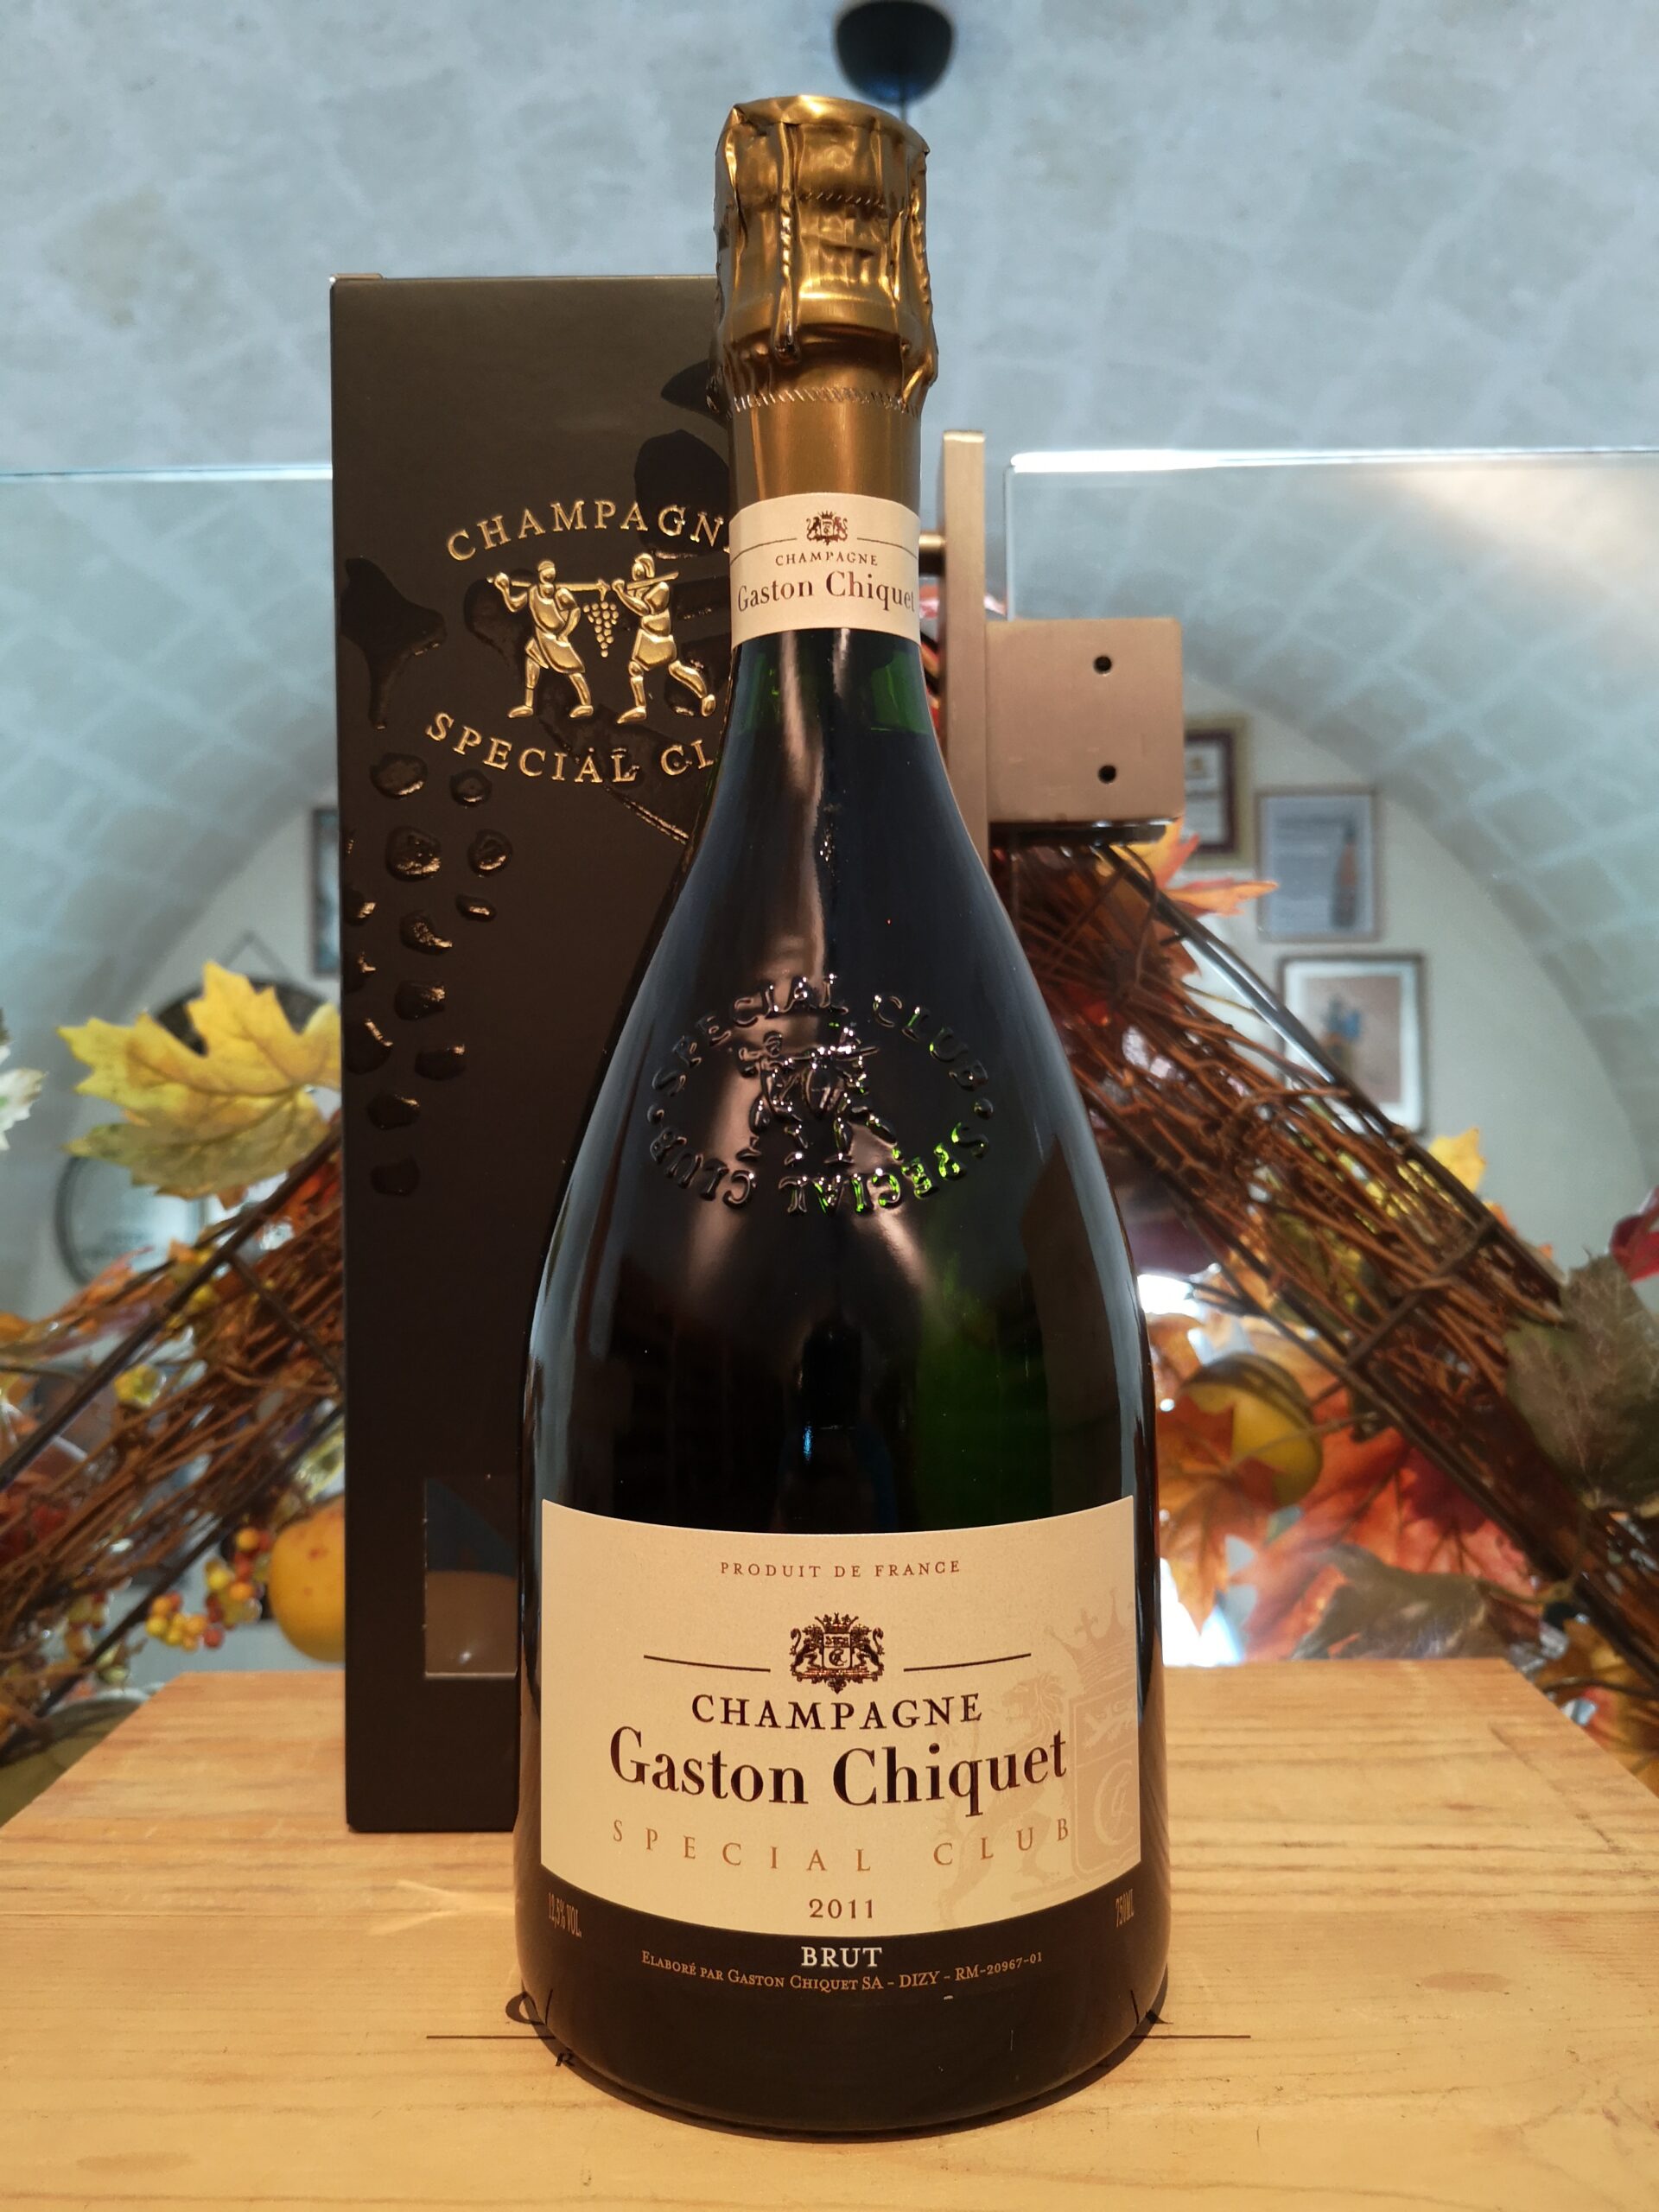 Special Club Grand Cru Gaston Chiquet Champagne Brut 2014